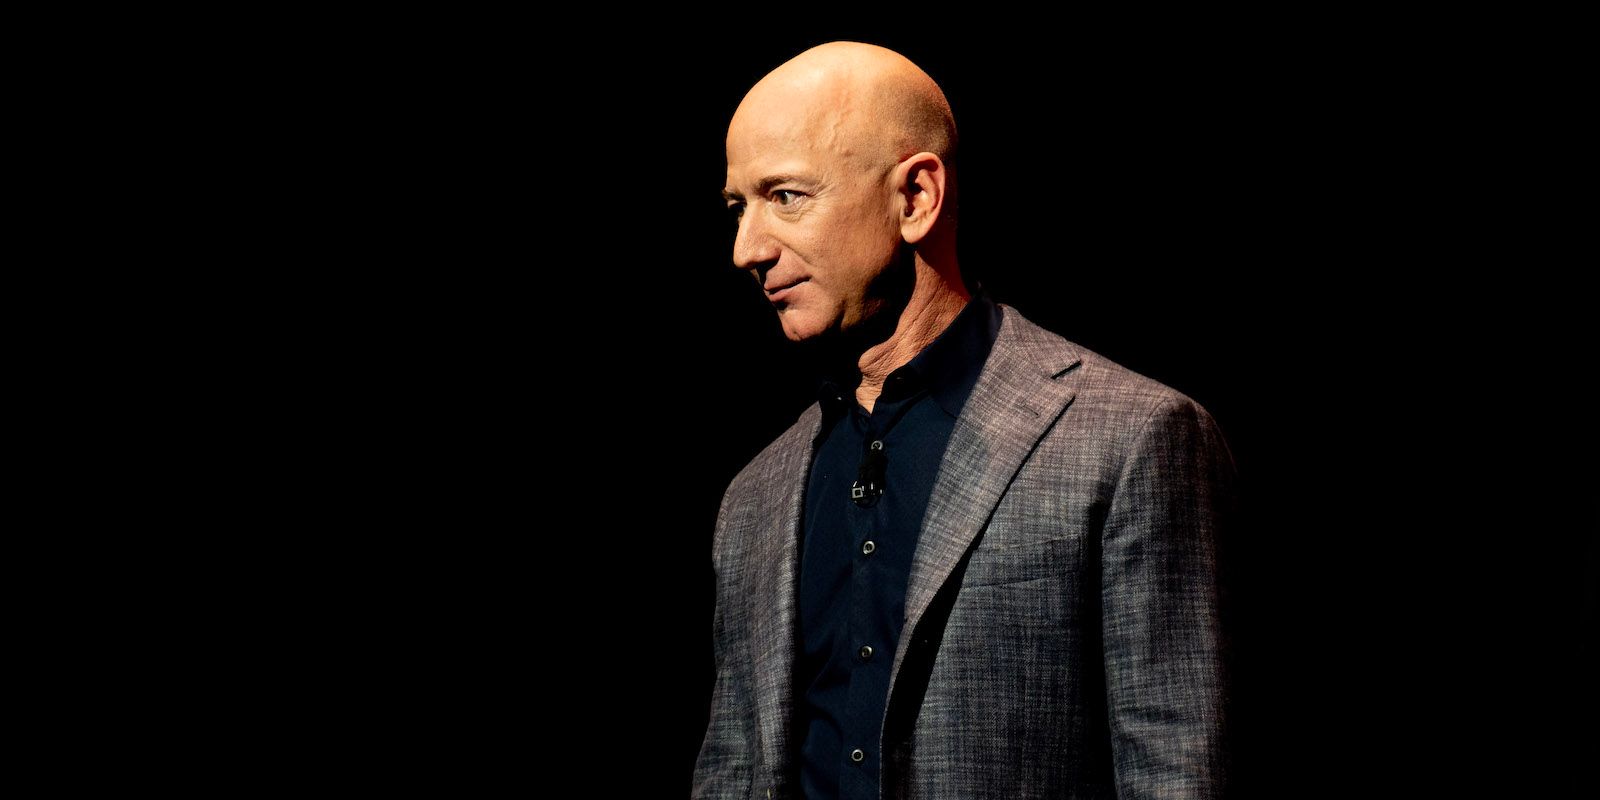 Jeff Bezos no palco escuro com pouca iluminação